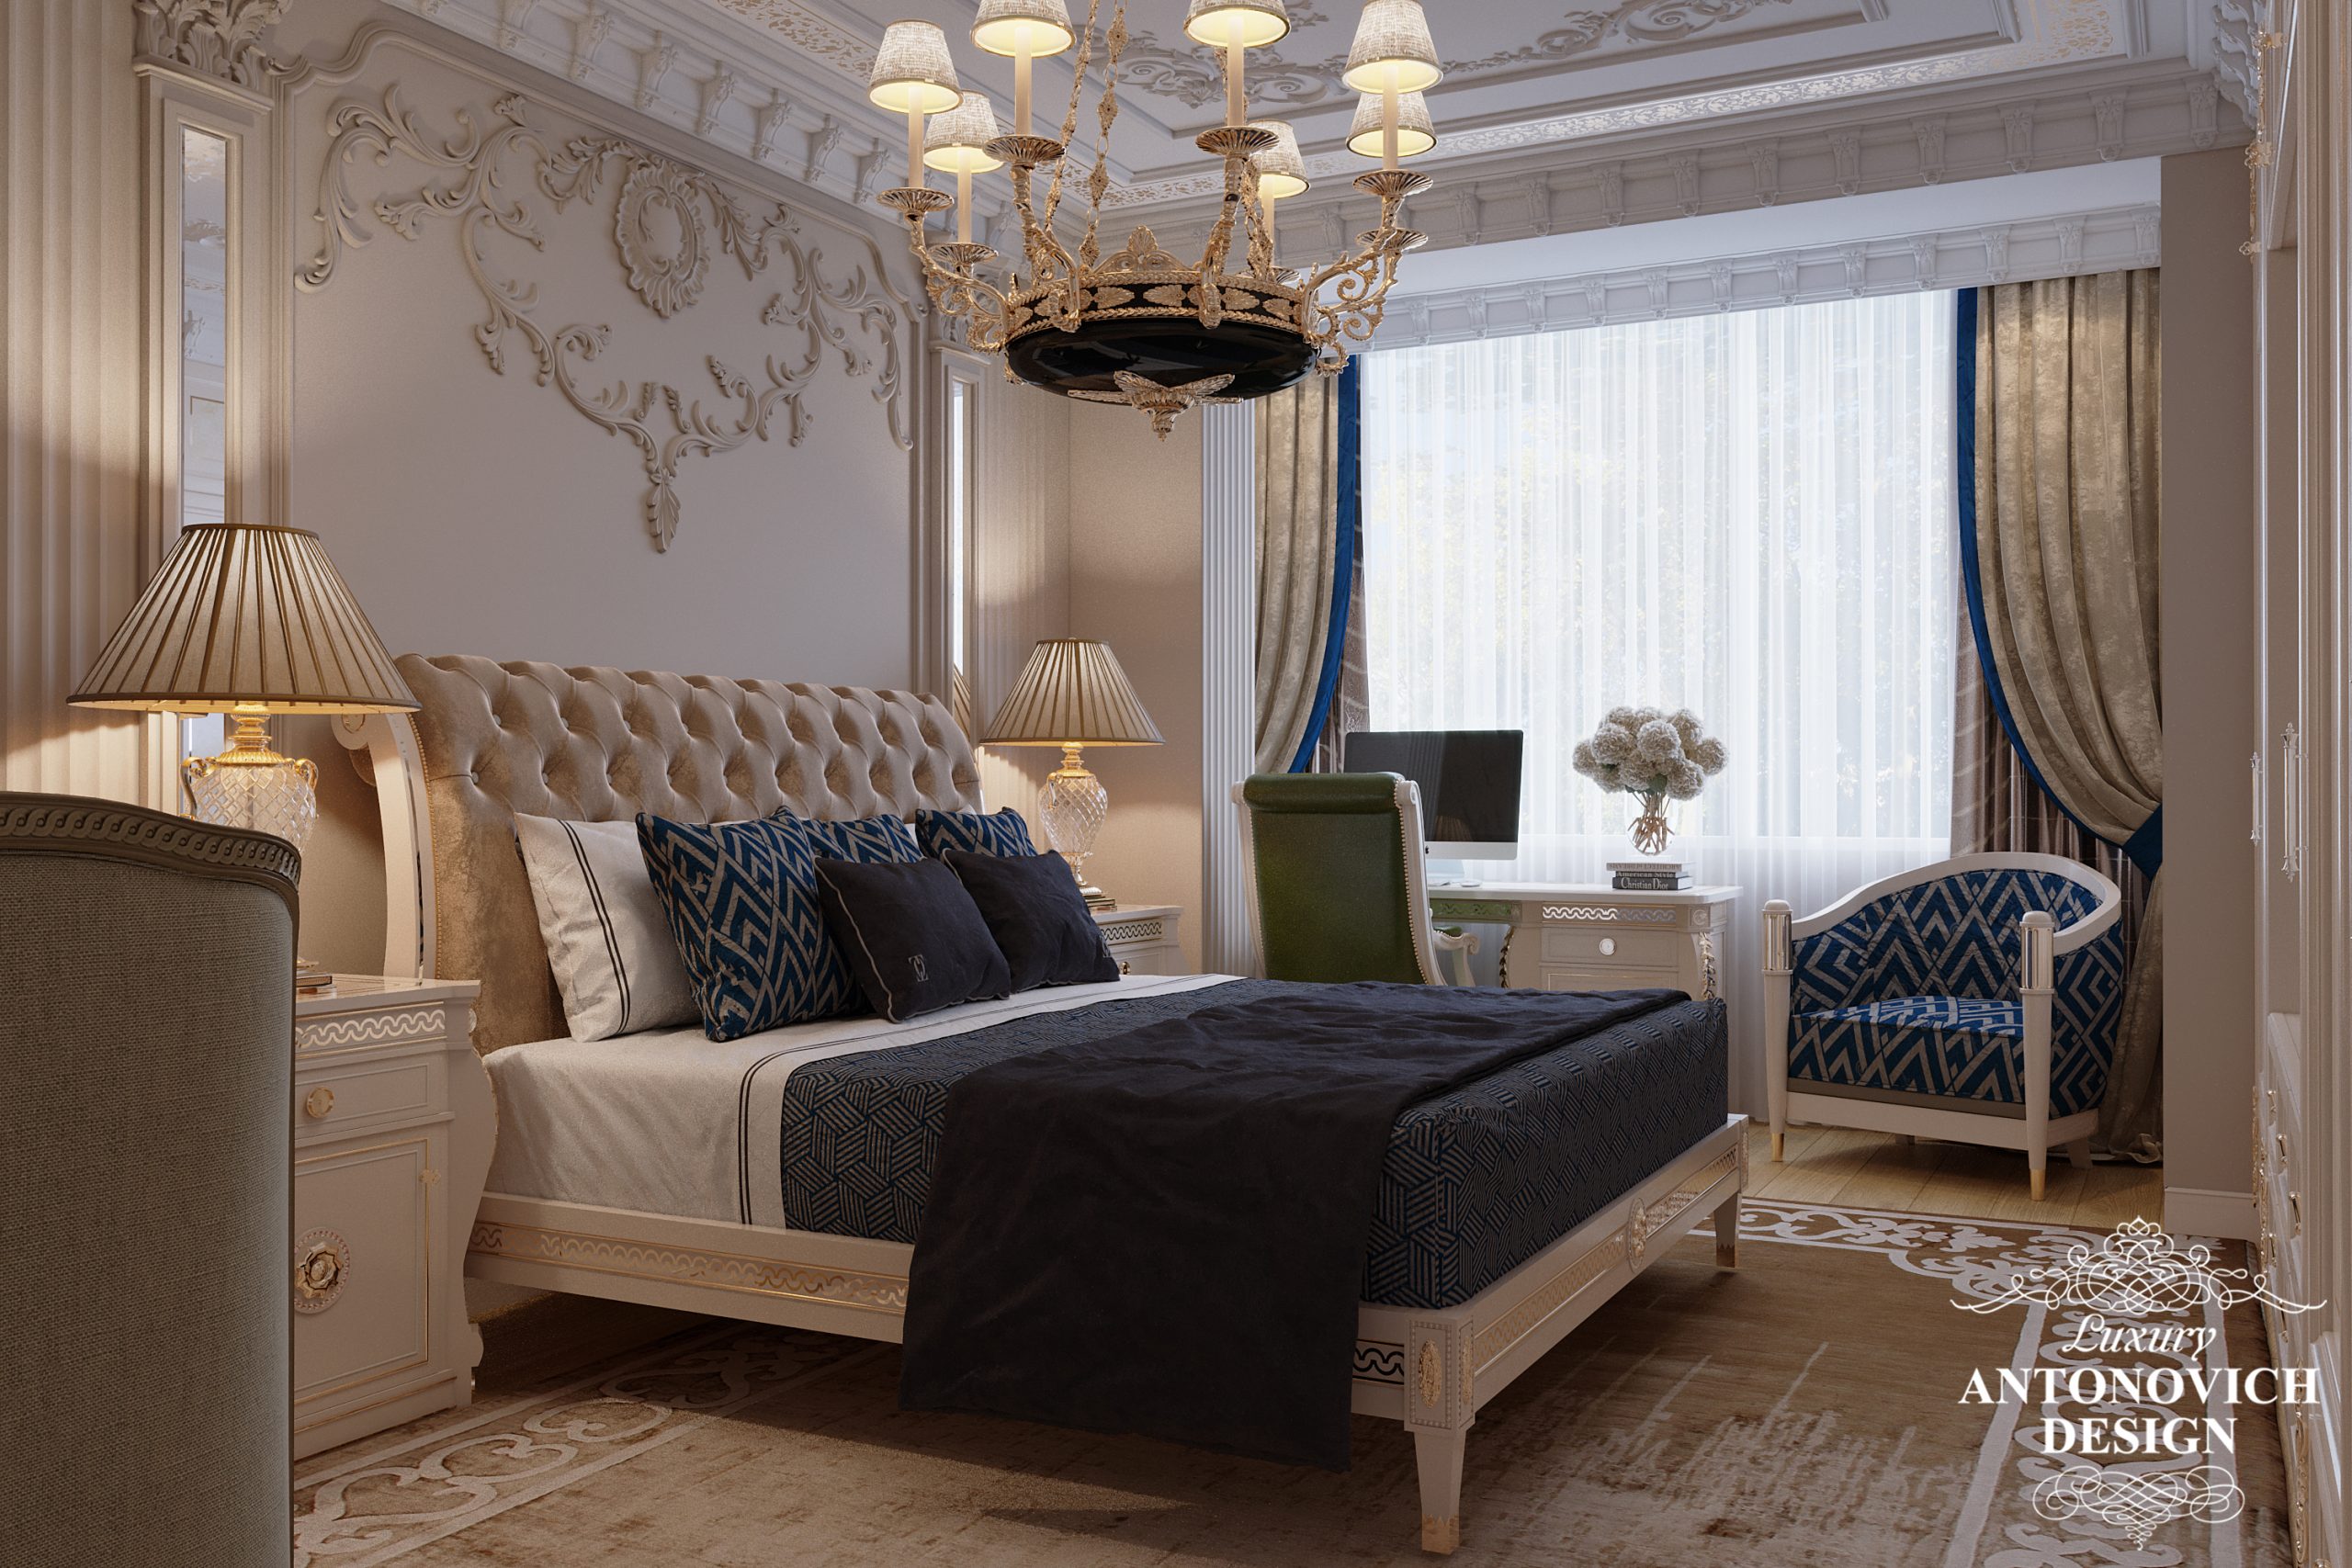 Изящный акцентный темный декор и роскошный бархатный текстиль в интерьере элитной гостевой спальни